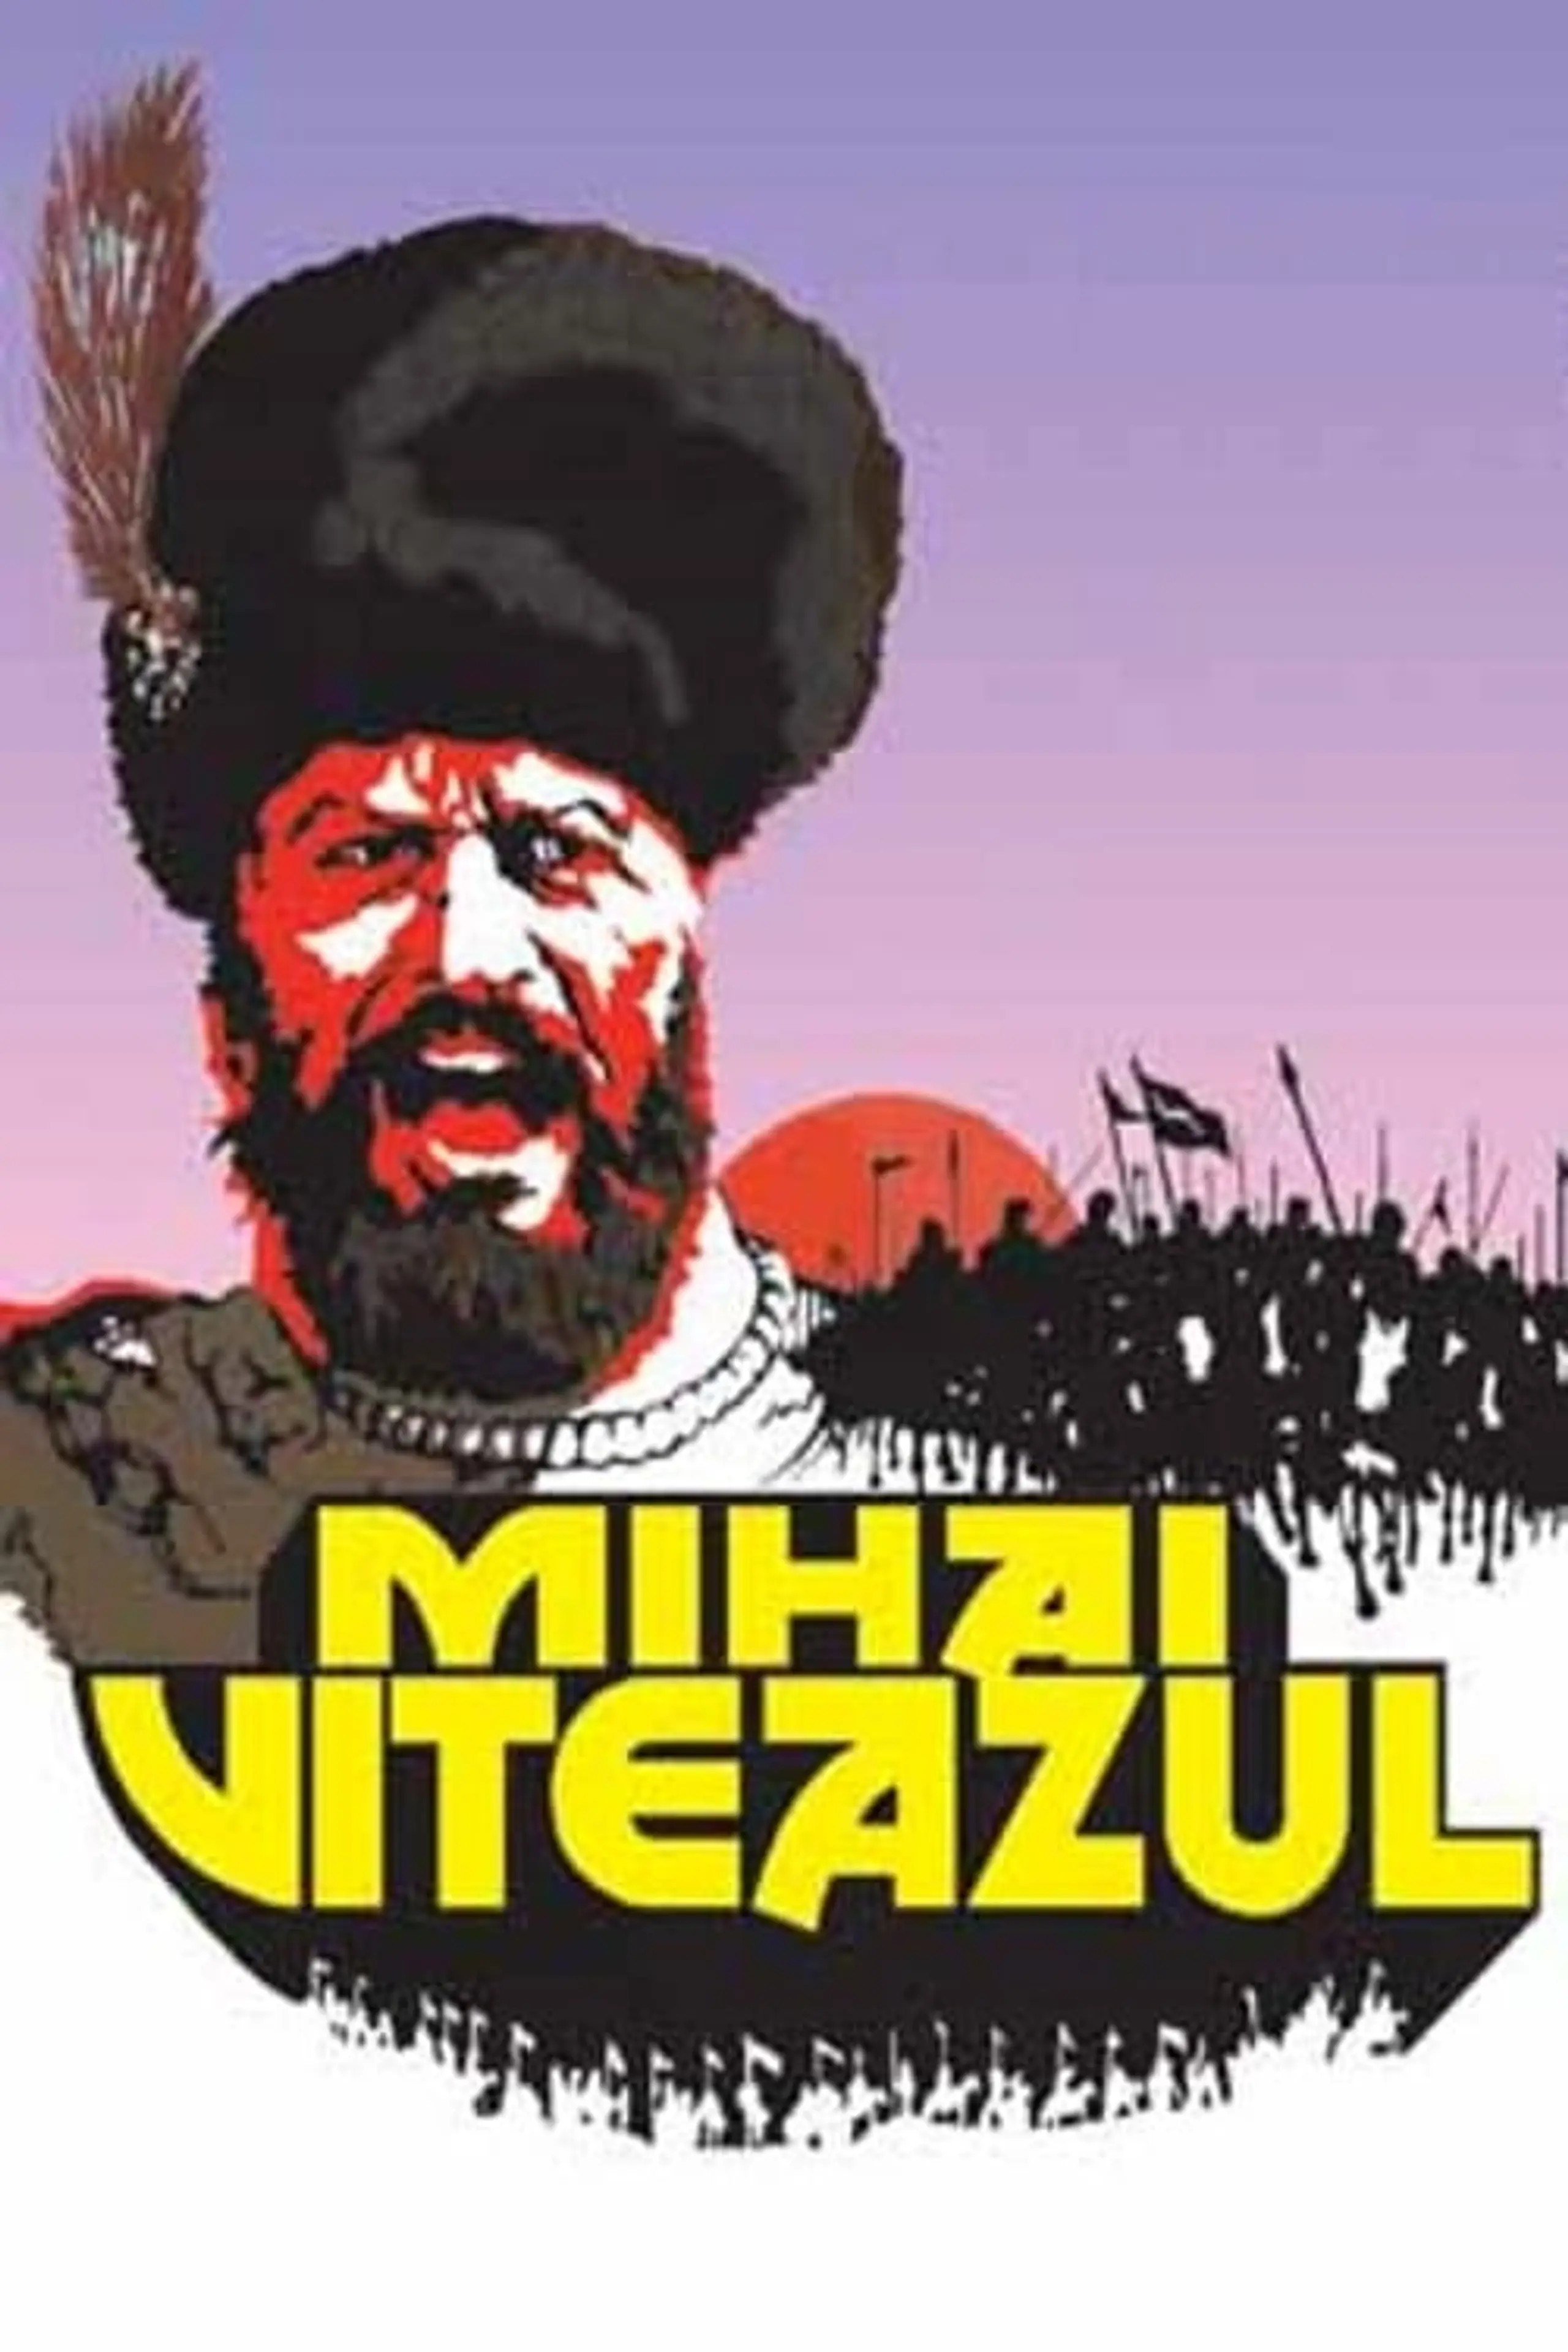 Mihai Viteazul - Schlacht der Giganten